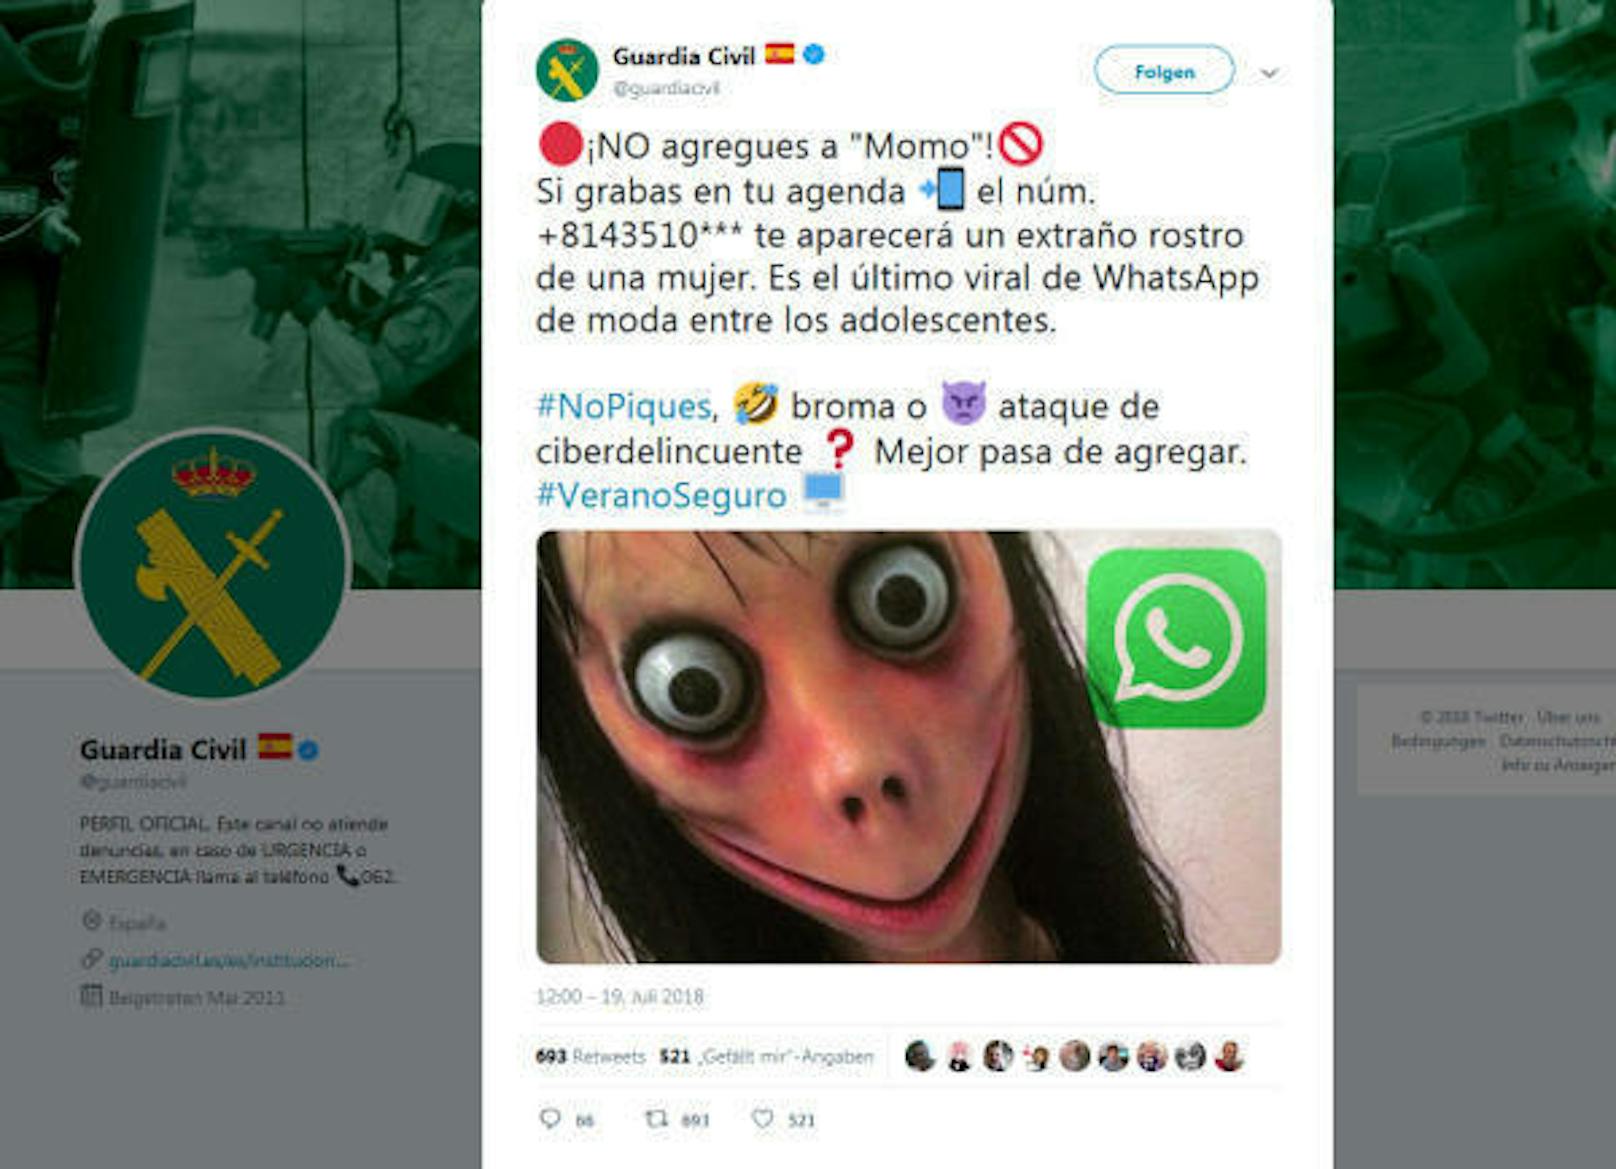 Die spanische Polizei warnte bereits im Juni davor, dass man die angegebene Nummer nicht bei Whatsapp hinzufügen solle, sonst bekomme man das Gesicht dieser Frau zu sehen. Erst später schwappte das Phänomen auch in die deutsche Sprachregion über.